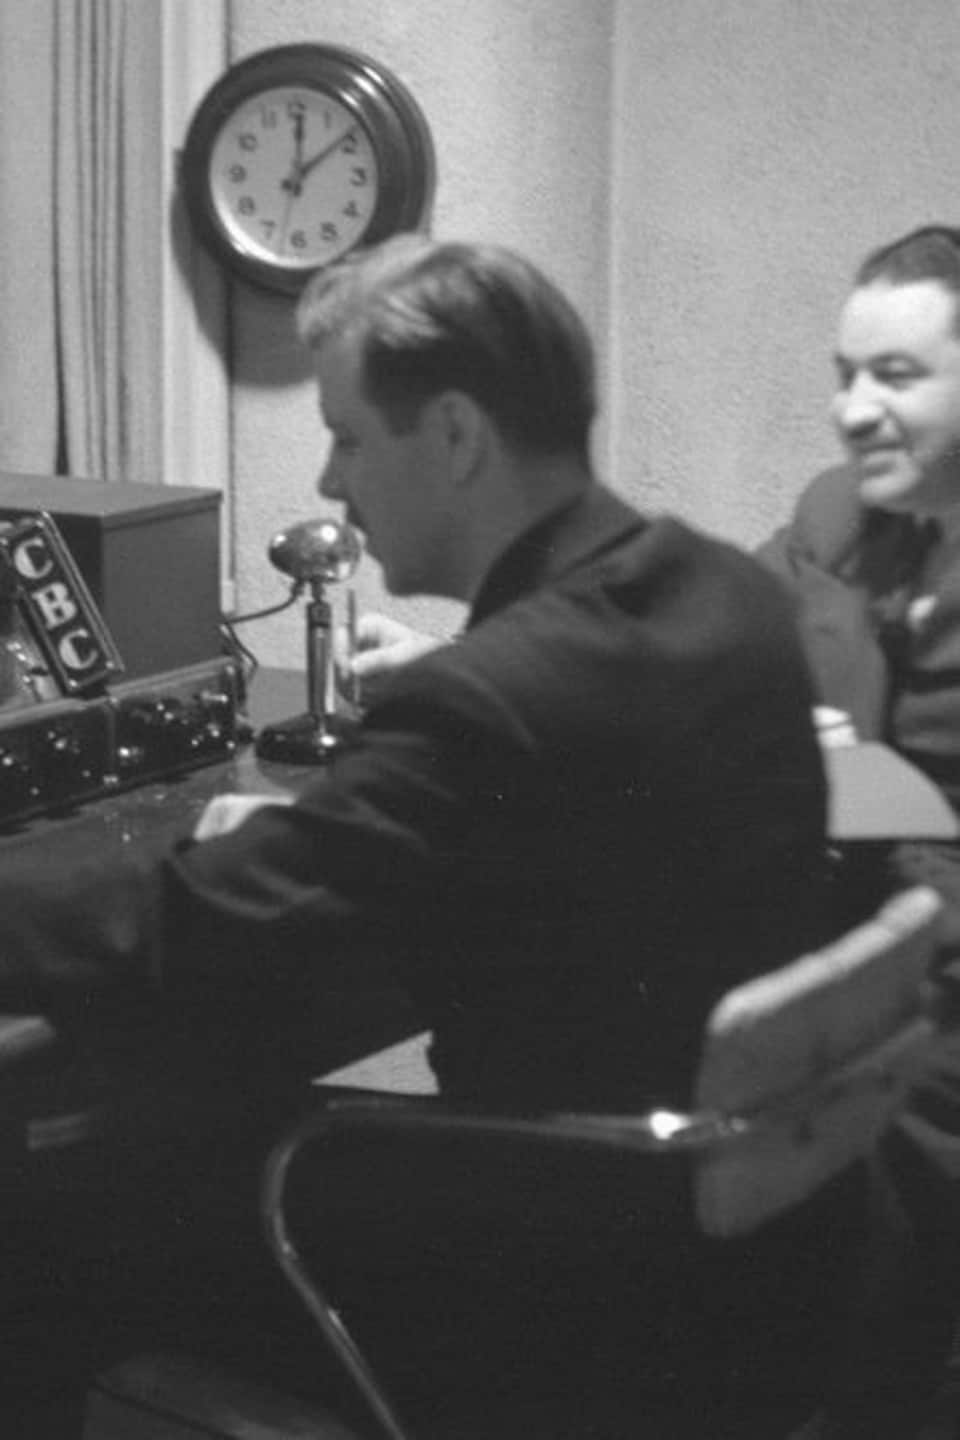 En régie, dans un studio de radio, le technicien opérateur et le réalisateur, assis devant la boîte de sonorisation et un micro.